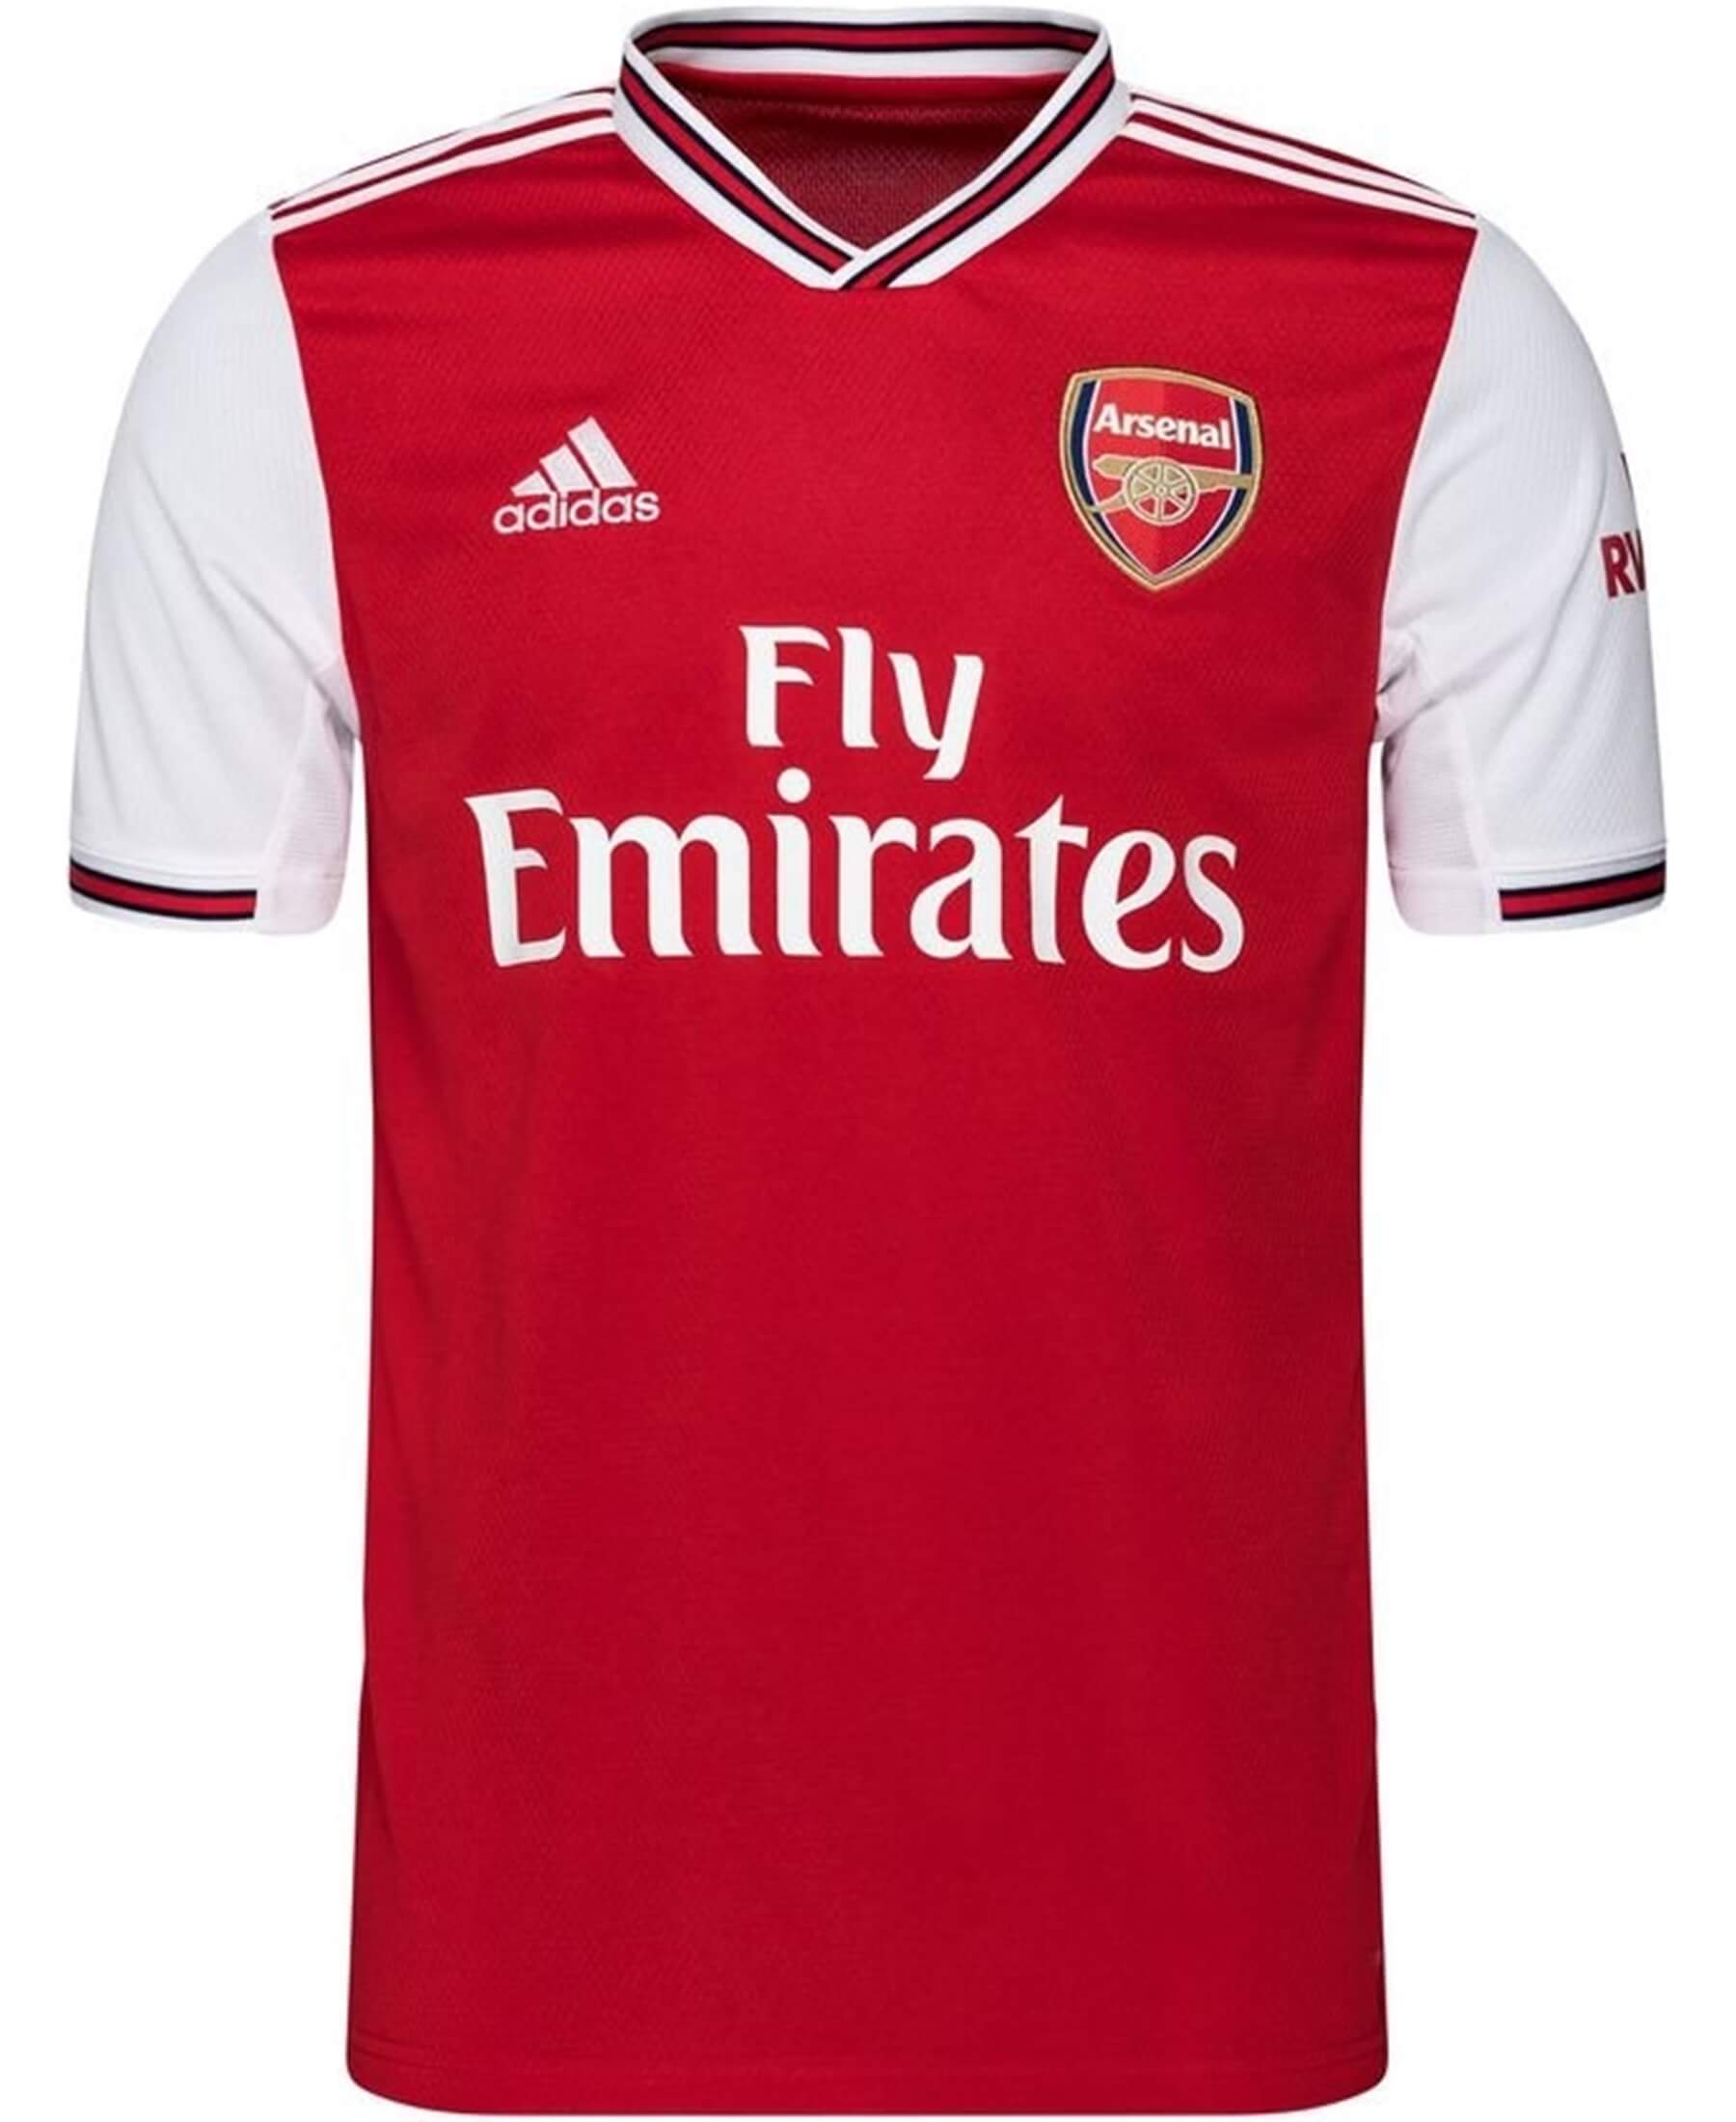 Das offizielle adidas FC Arsenal AFC Heimtrikot (EH5637) für die Saison 2019/2020 - ein Must-Have für Fans. Vereinsfarben und Logo auf der Brust, hochwertiges Material für Tragekomfort. Holen Sie es sich bei SHOP4TEAMSPORT und zeigen Sie Stil und Teamspirit.